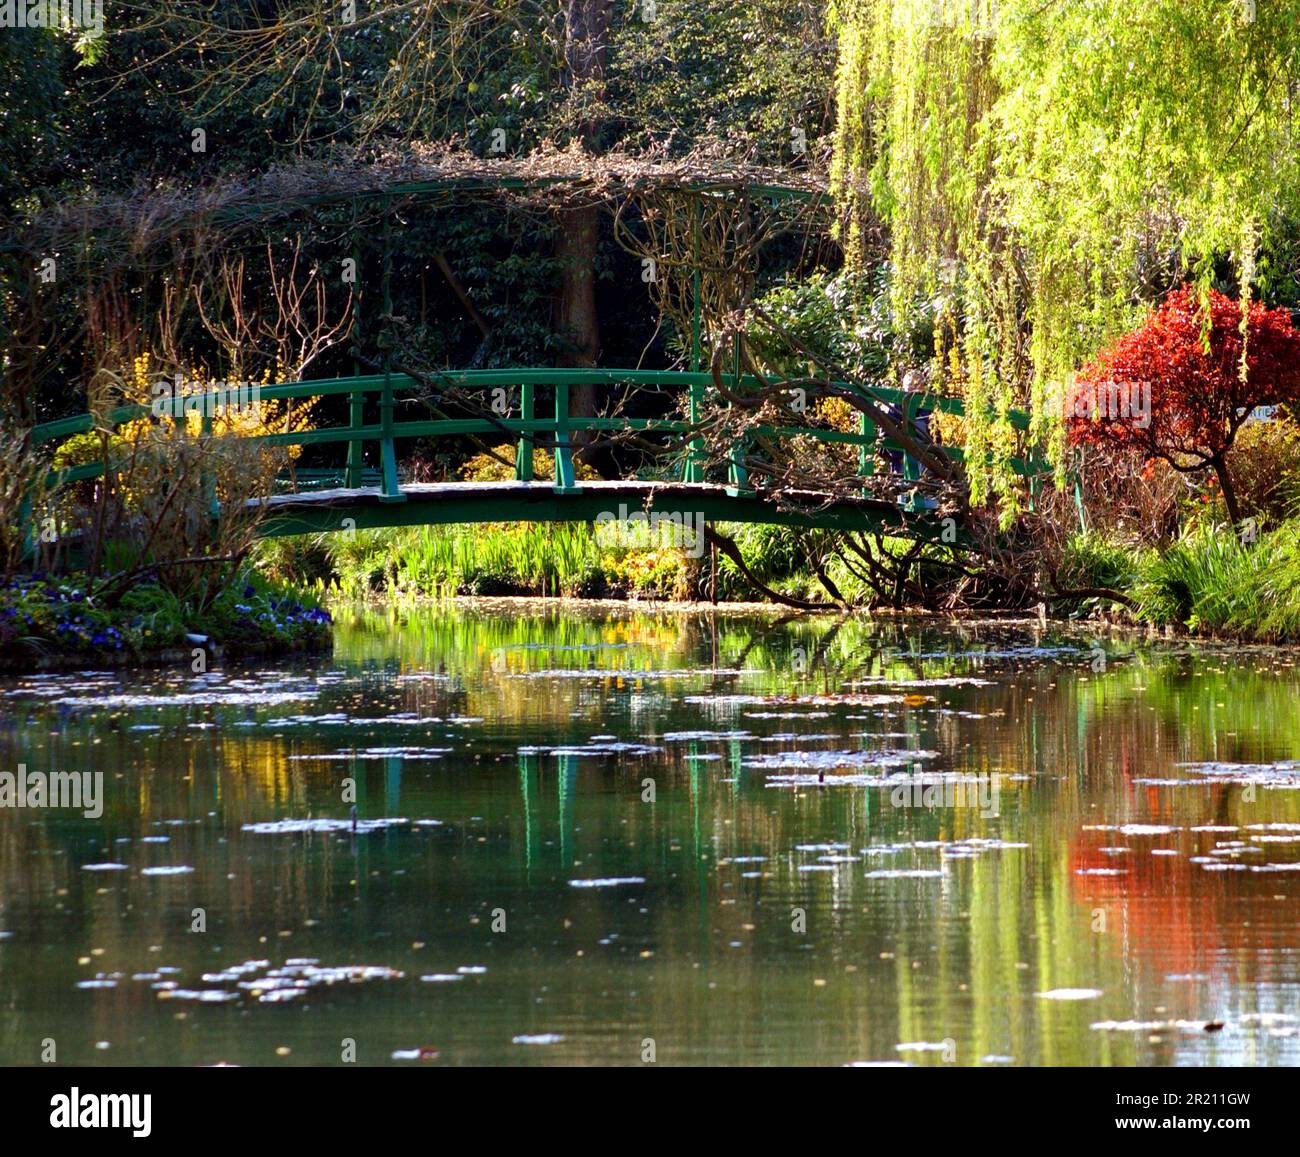 Photo prise au jardin de Monet à Giverny qui a inspiré la série de lilas d'eau et de ponts japonais de Claude Monet. Banque D'Images